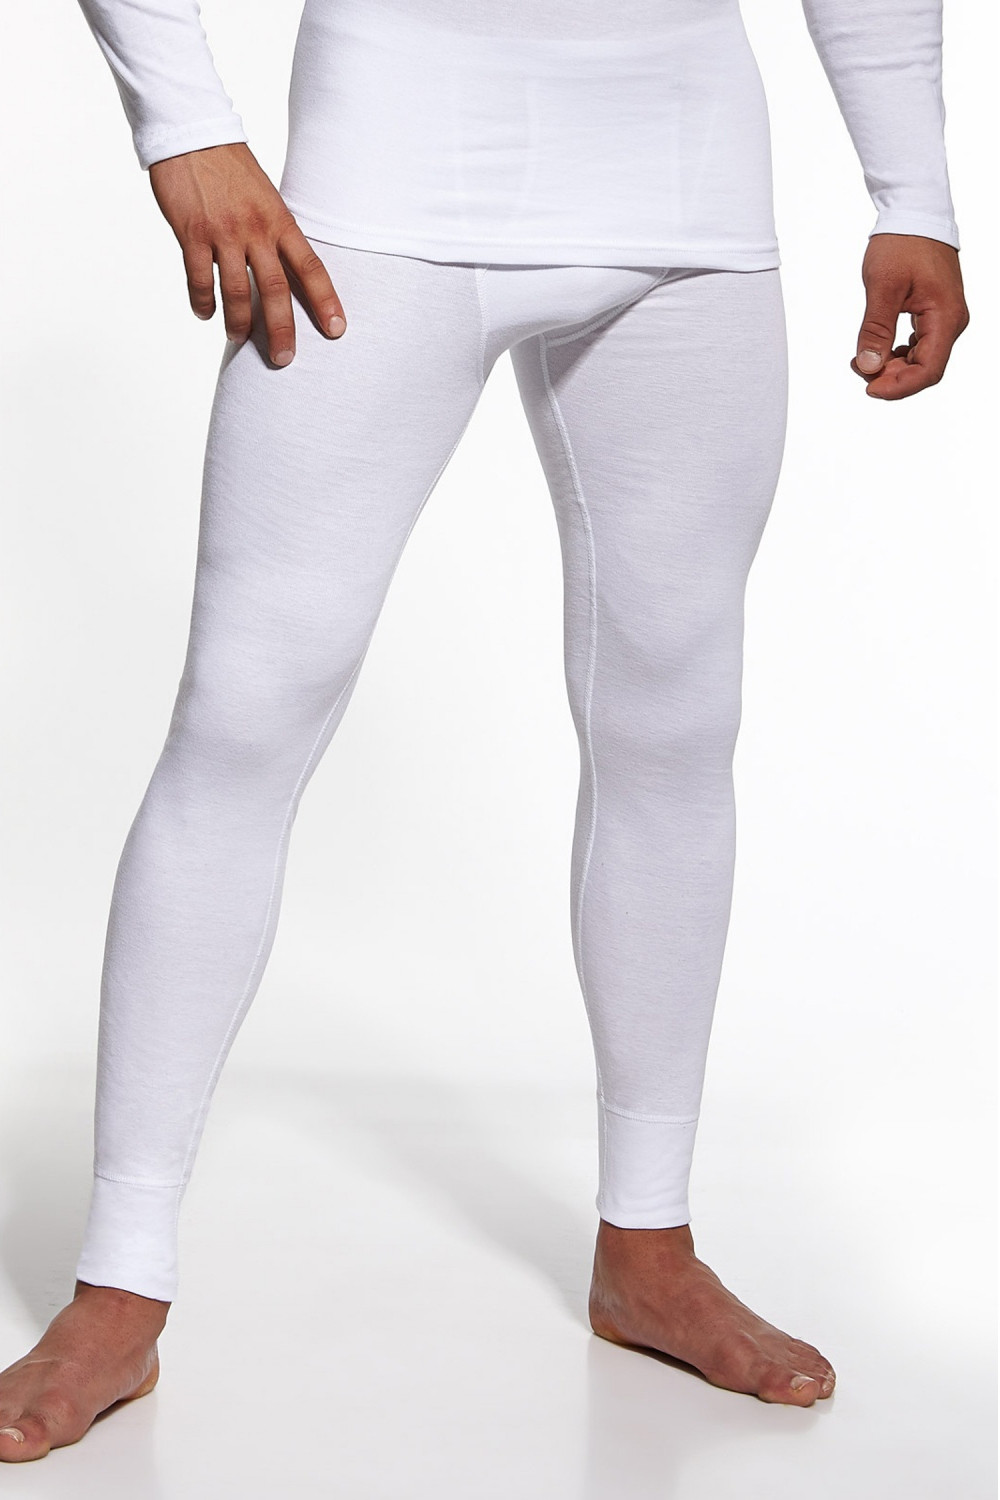 Pánské podvlékací kalhoty Authentic white - CORNETTE Bílá L